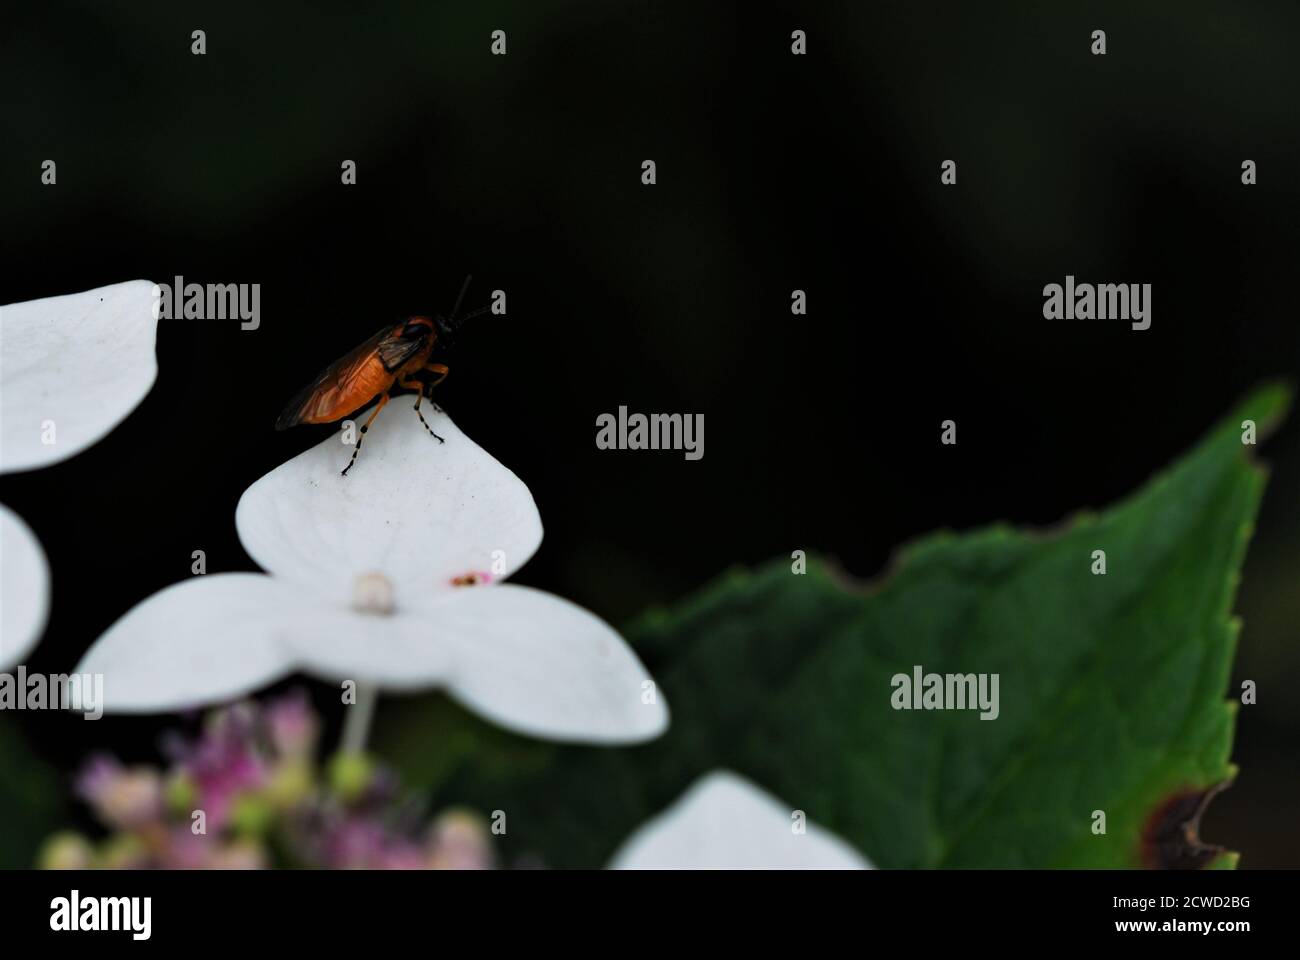 Orangefarbenes Insekt mit schwarzem Kopf und orange schwarz gestreiften Beinen Auf weißem Blumenblatt Stockfoto